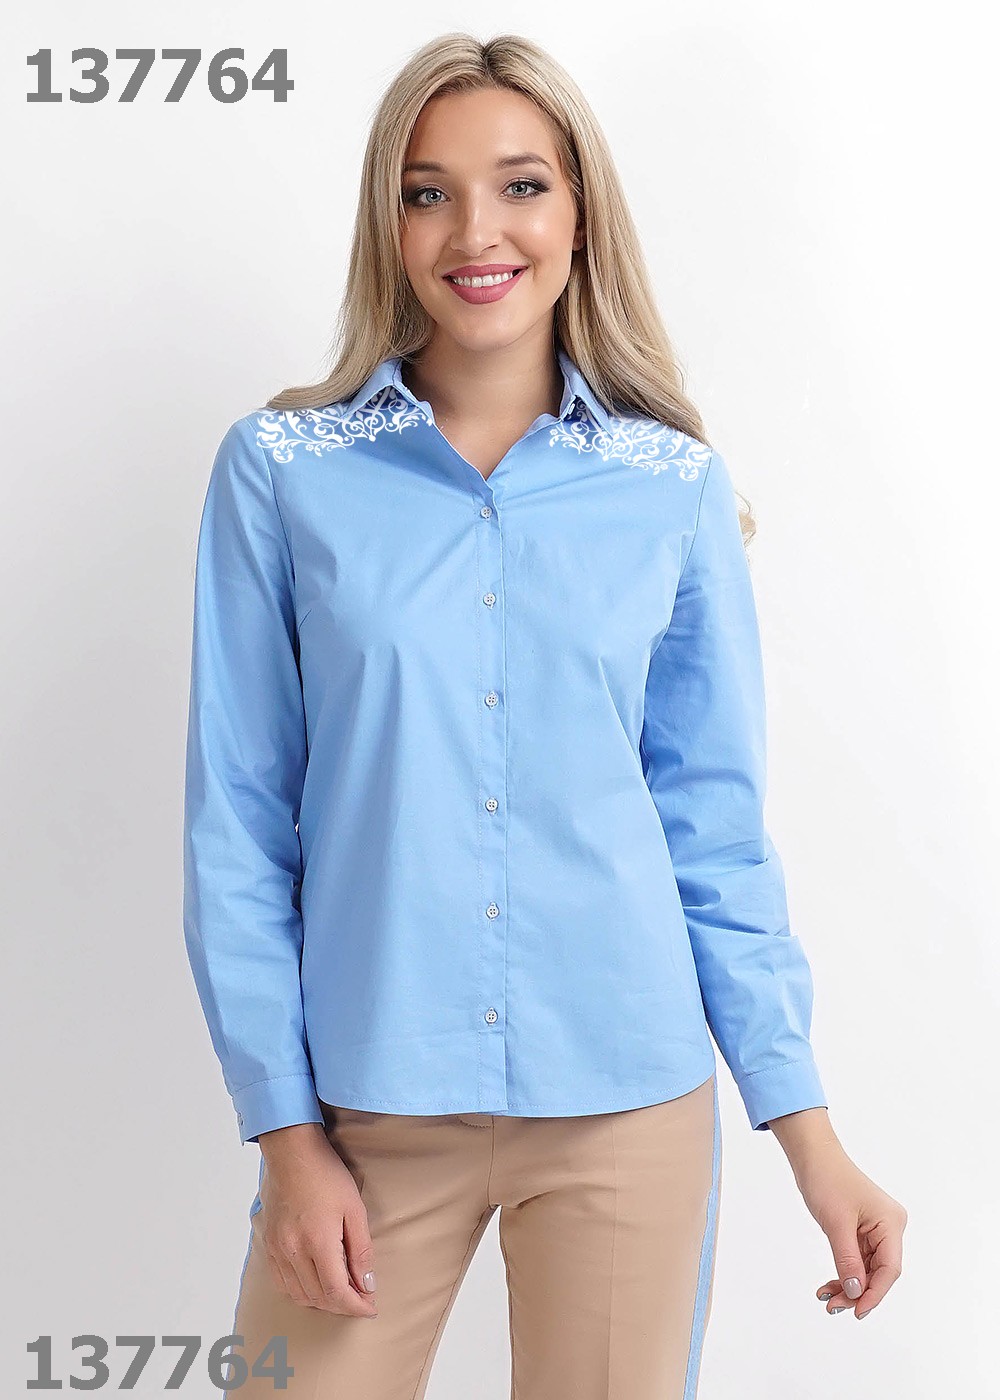 Купить голубые блузку. Блузка Клевер 281921т4ппн. Clever блузка блузка женская голубая. Clever рубашка женская 232848/107шк. Блузка Клевер 732884.